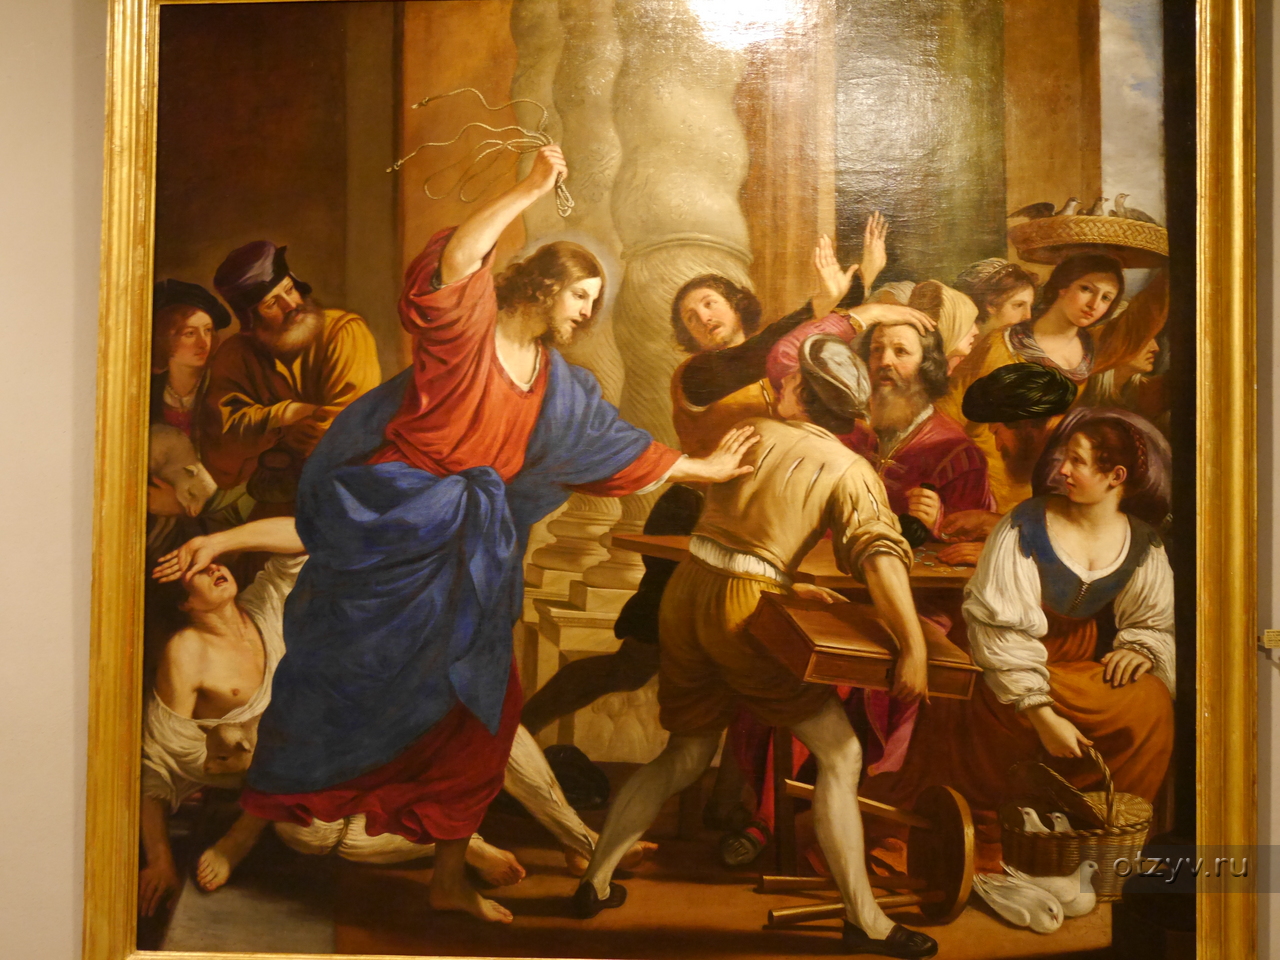 Христос изгоняет торговцев из храма Эль греко